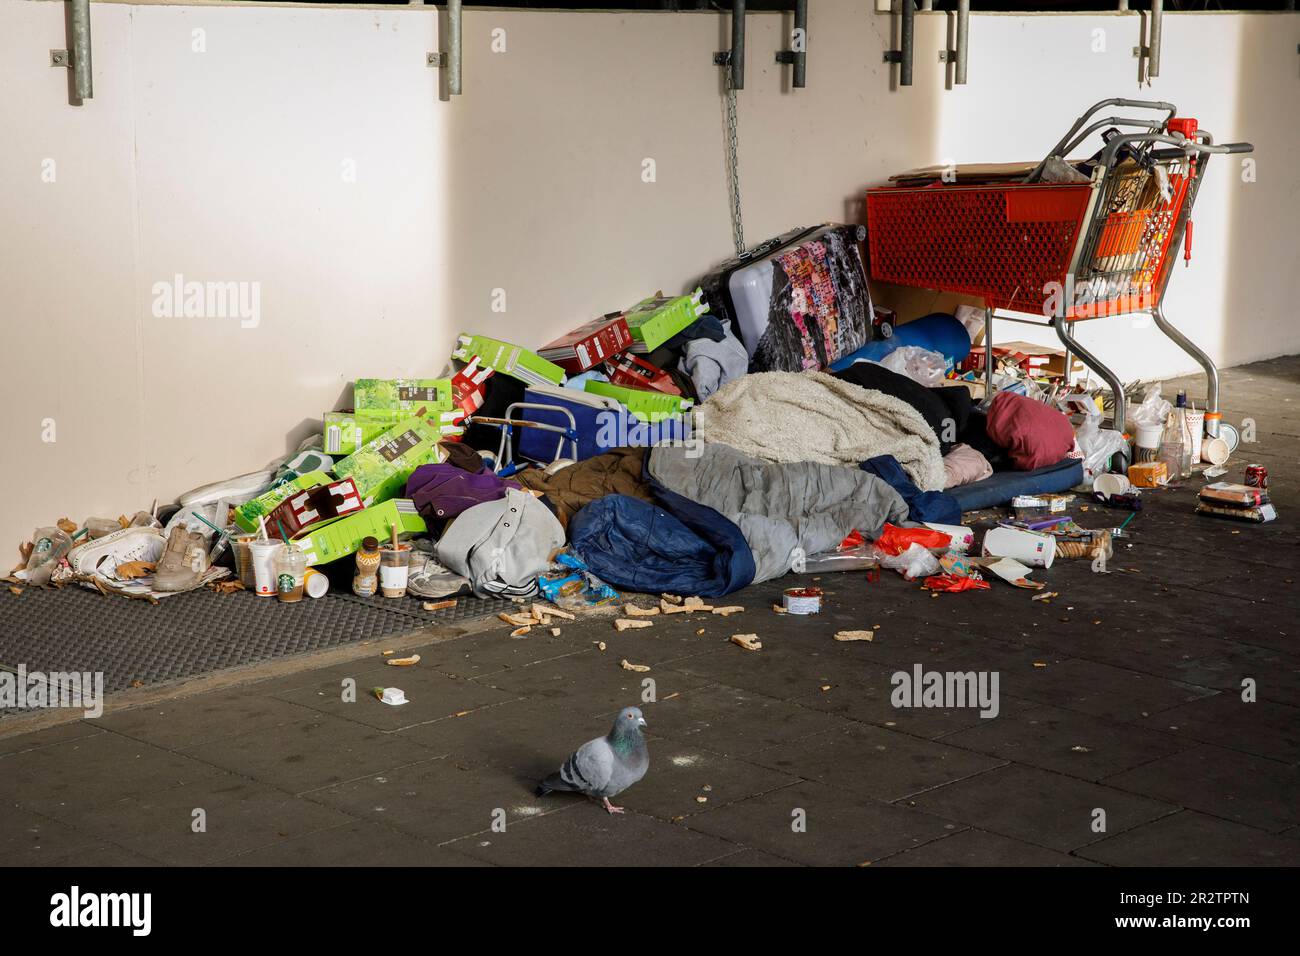 Senzatetto con i suoi possedimenti e un sacco di spazzatura si trova in via Caecilien nel centro della città, sotto una zona coperta del marciapiede, Colonia, GE Foto Stock